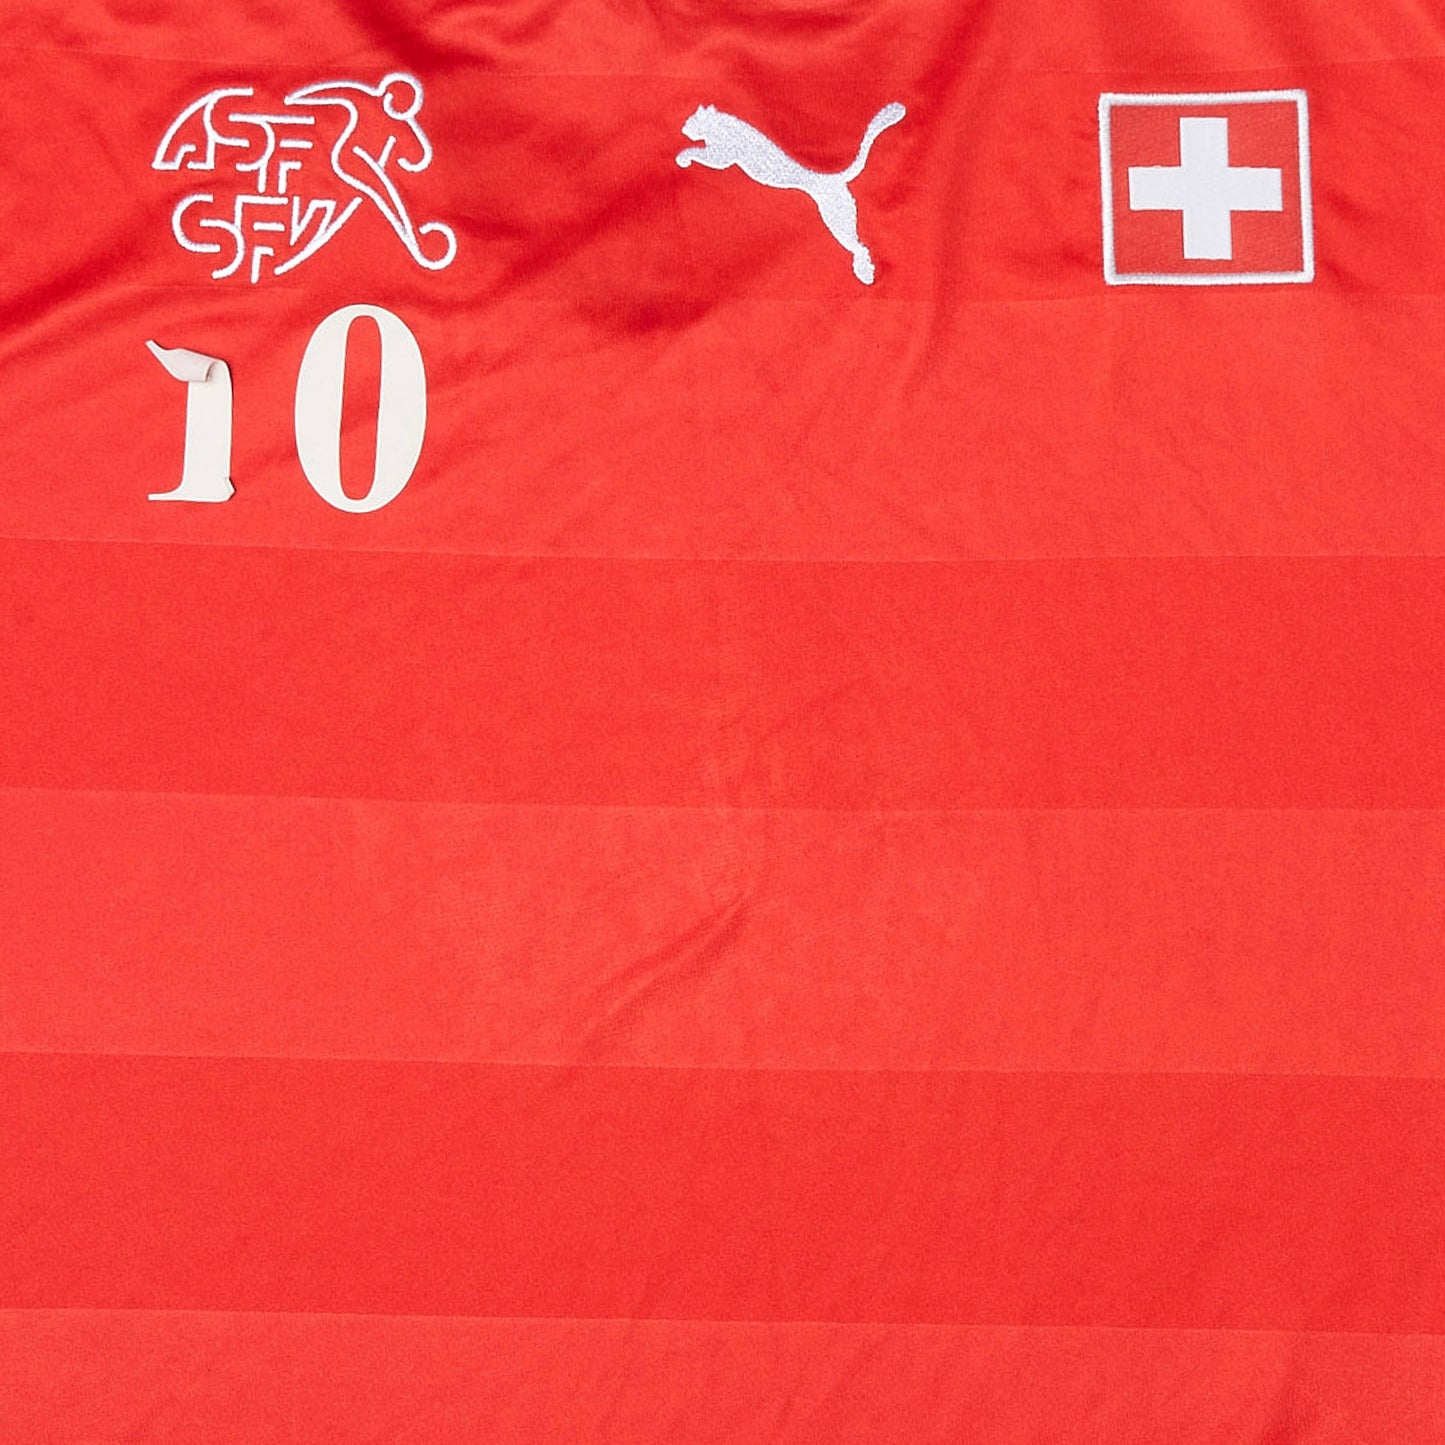 Swiss National Shirt - XL